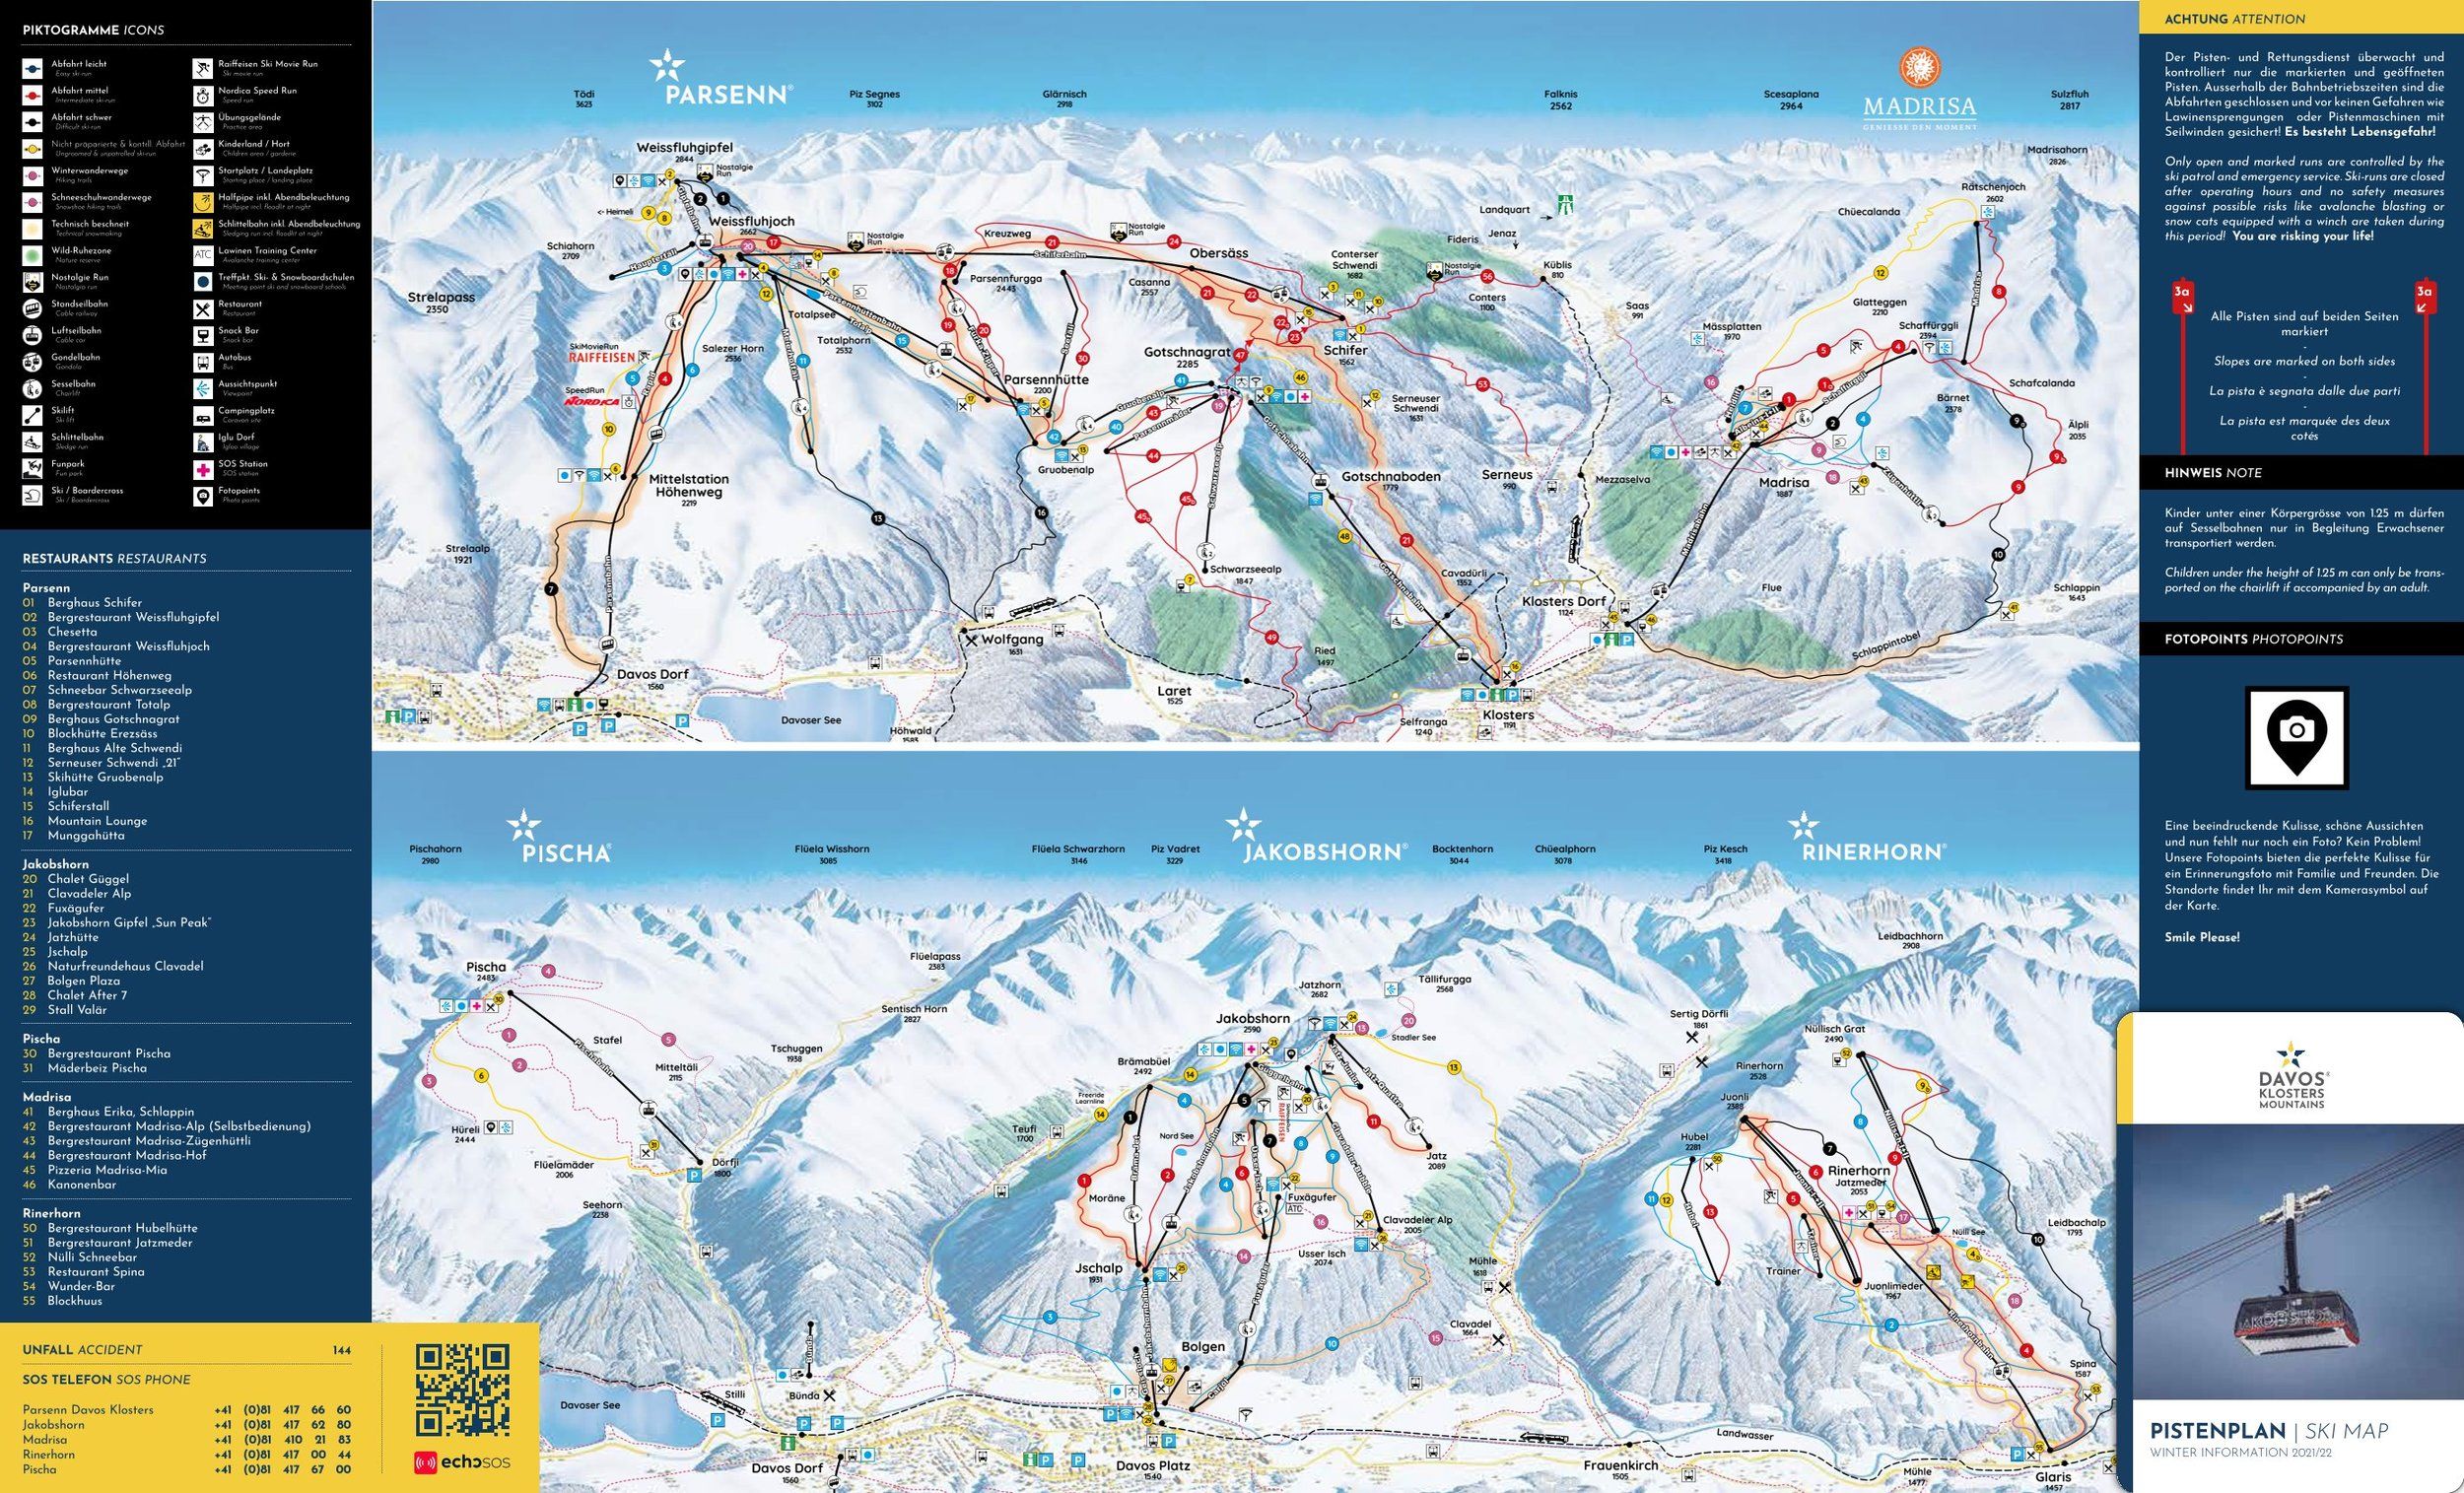 Pistenplan / Karte Skigebiet Davos, Schweiz